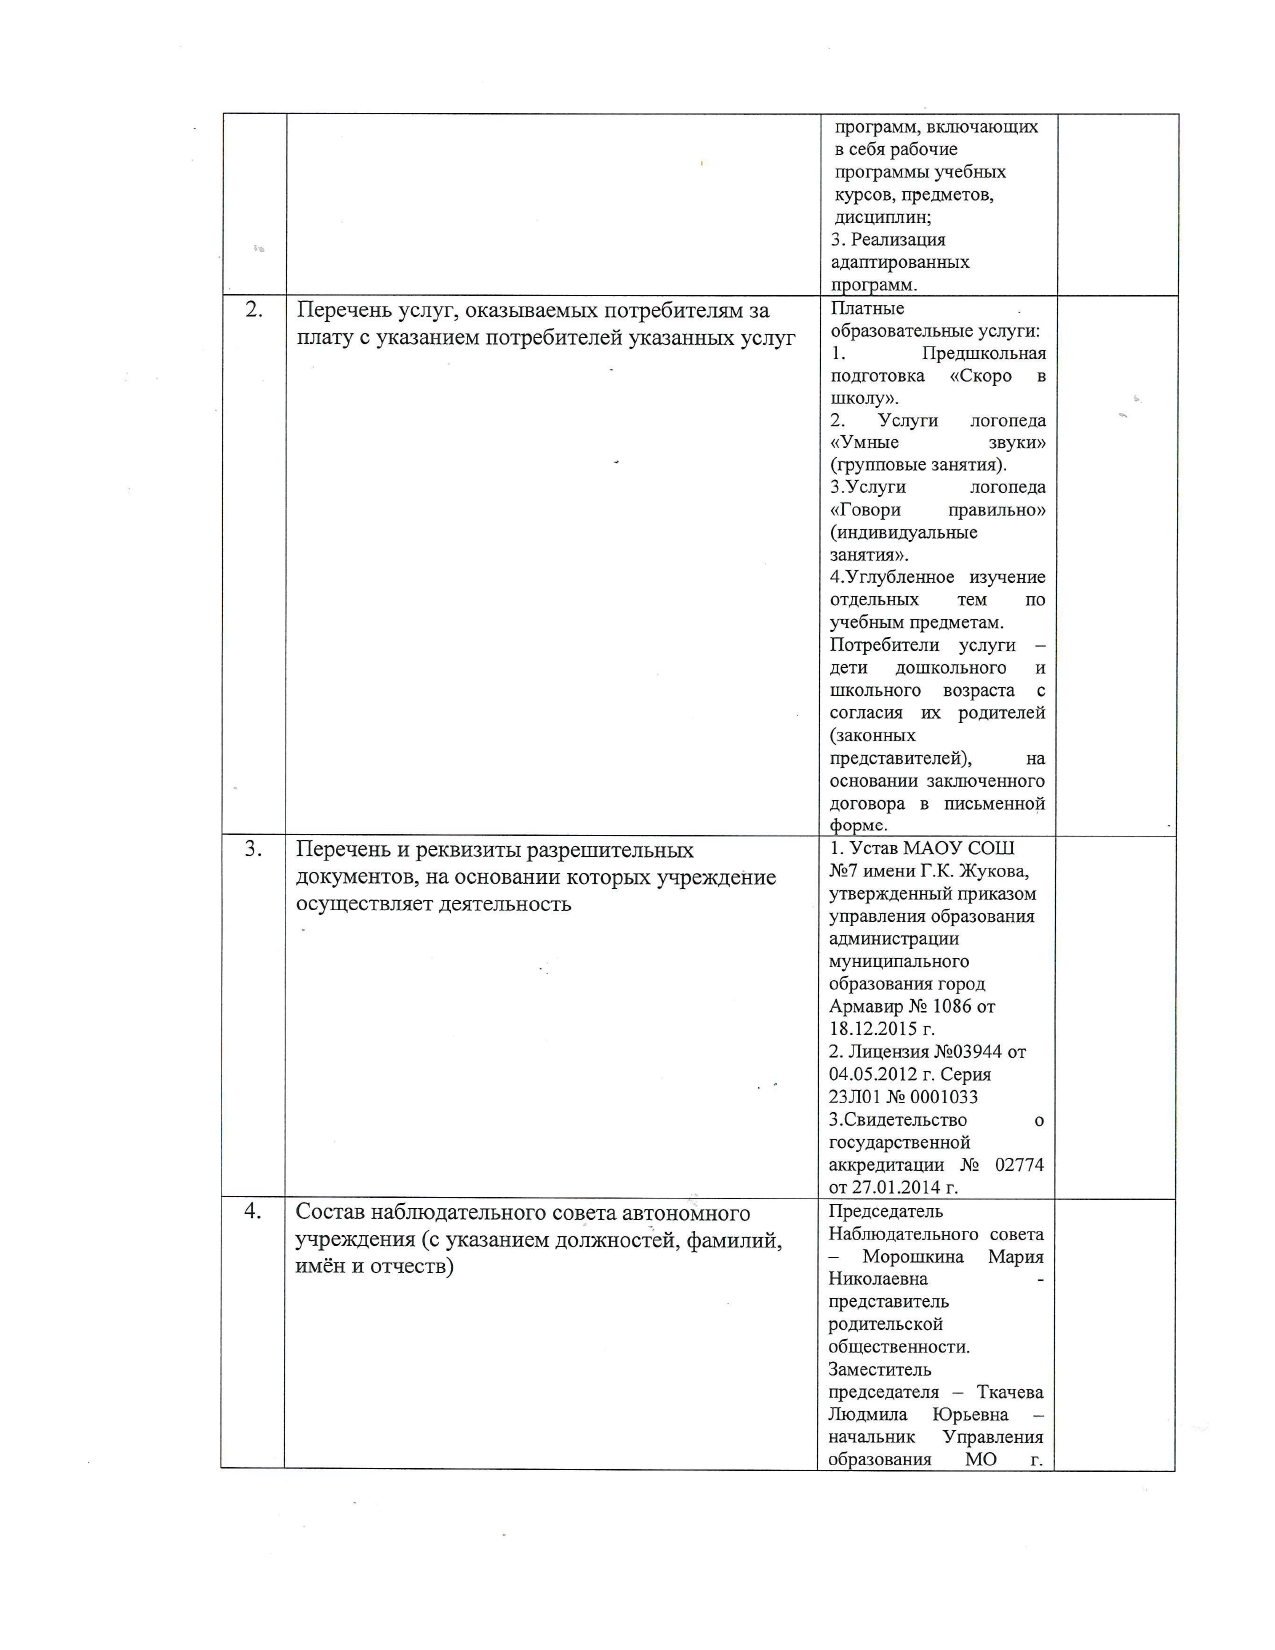 Отчет о результатах деятельности МАОУ СОШ №7 имени Г.К. Жукова_page-0002.jpg